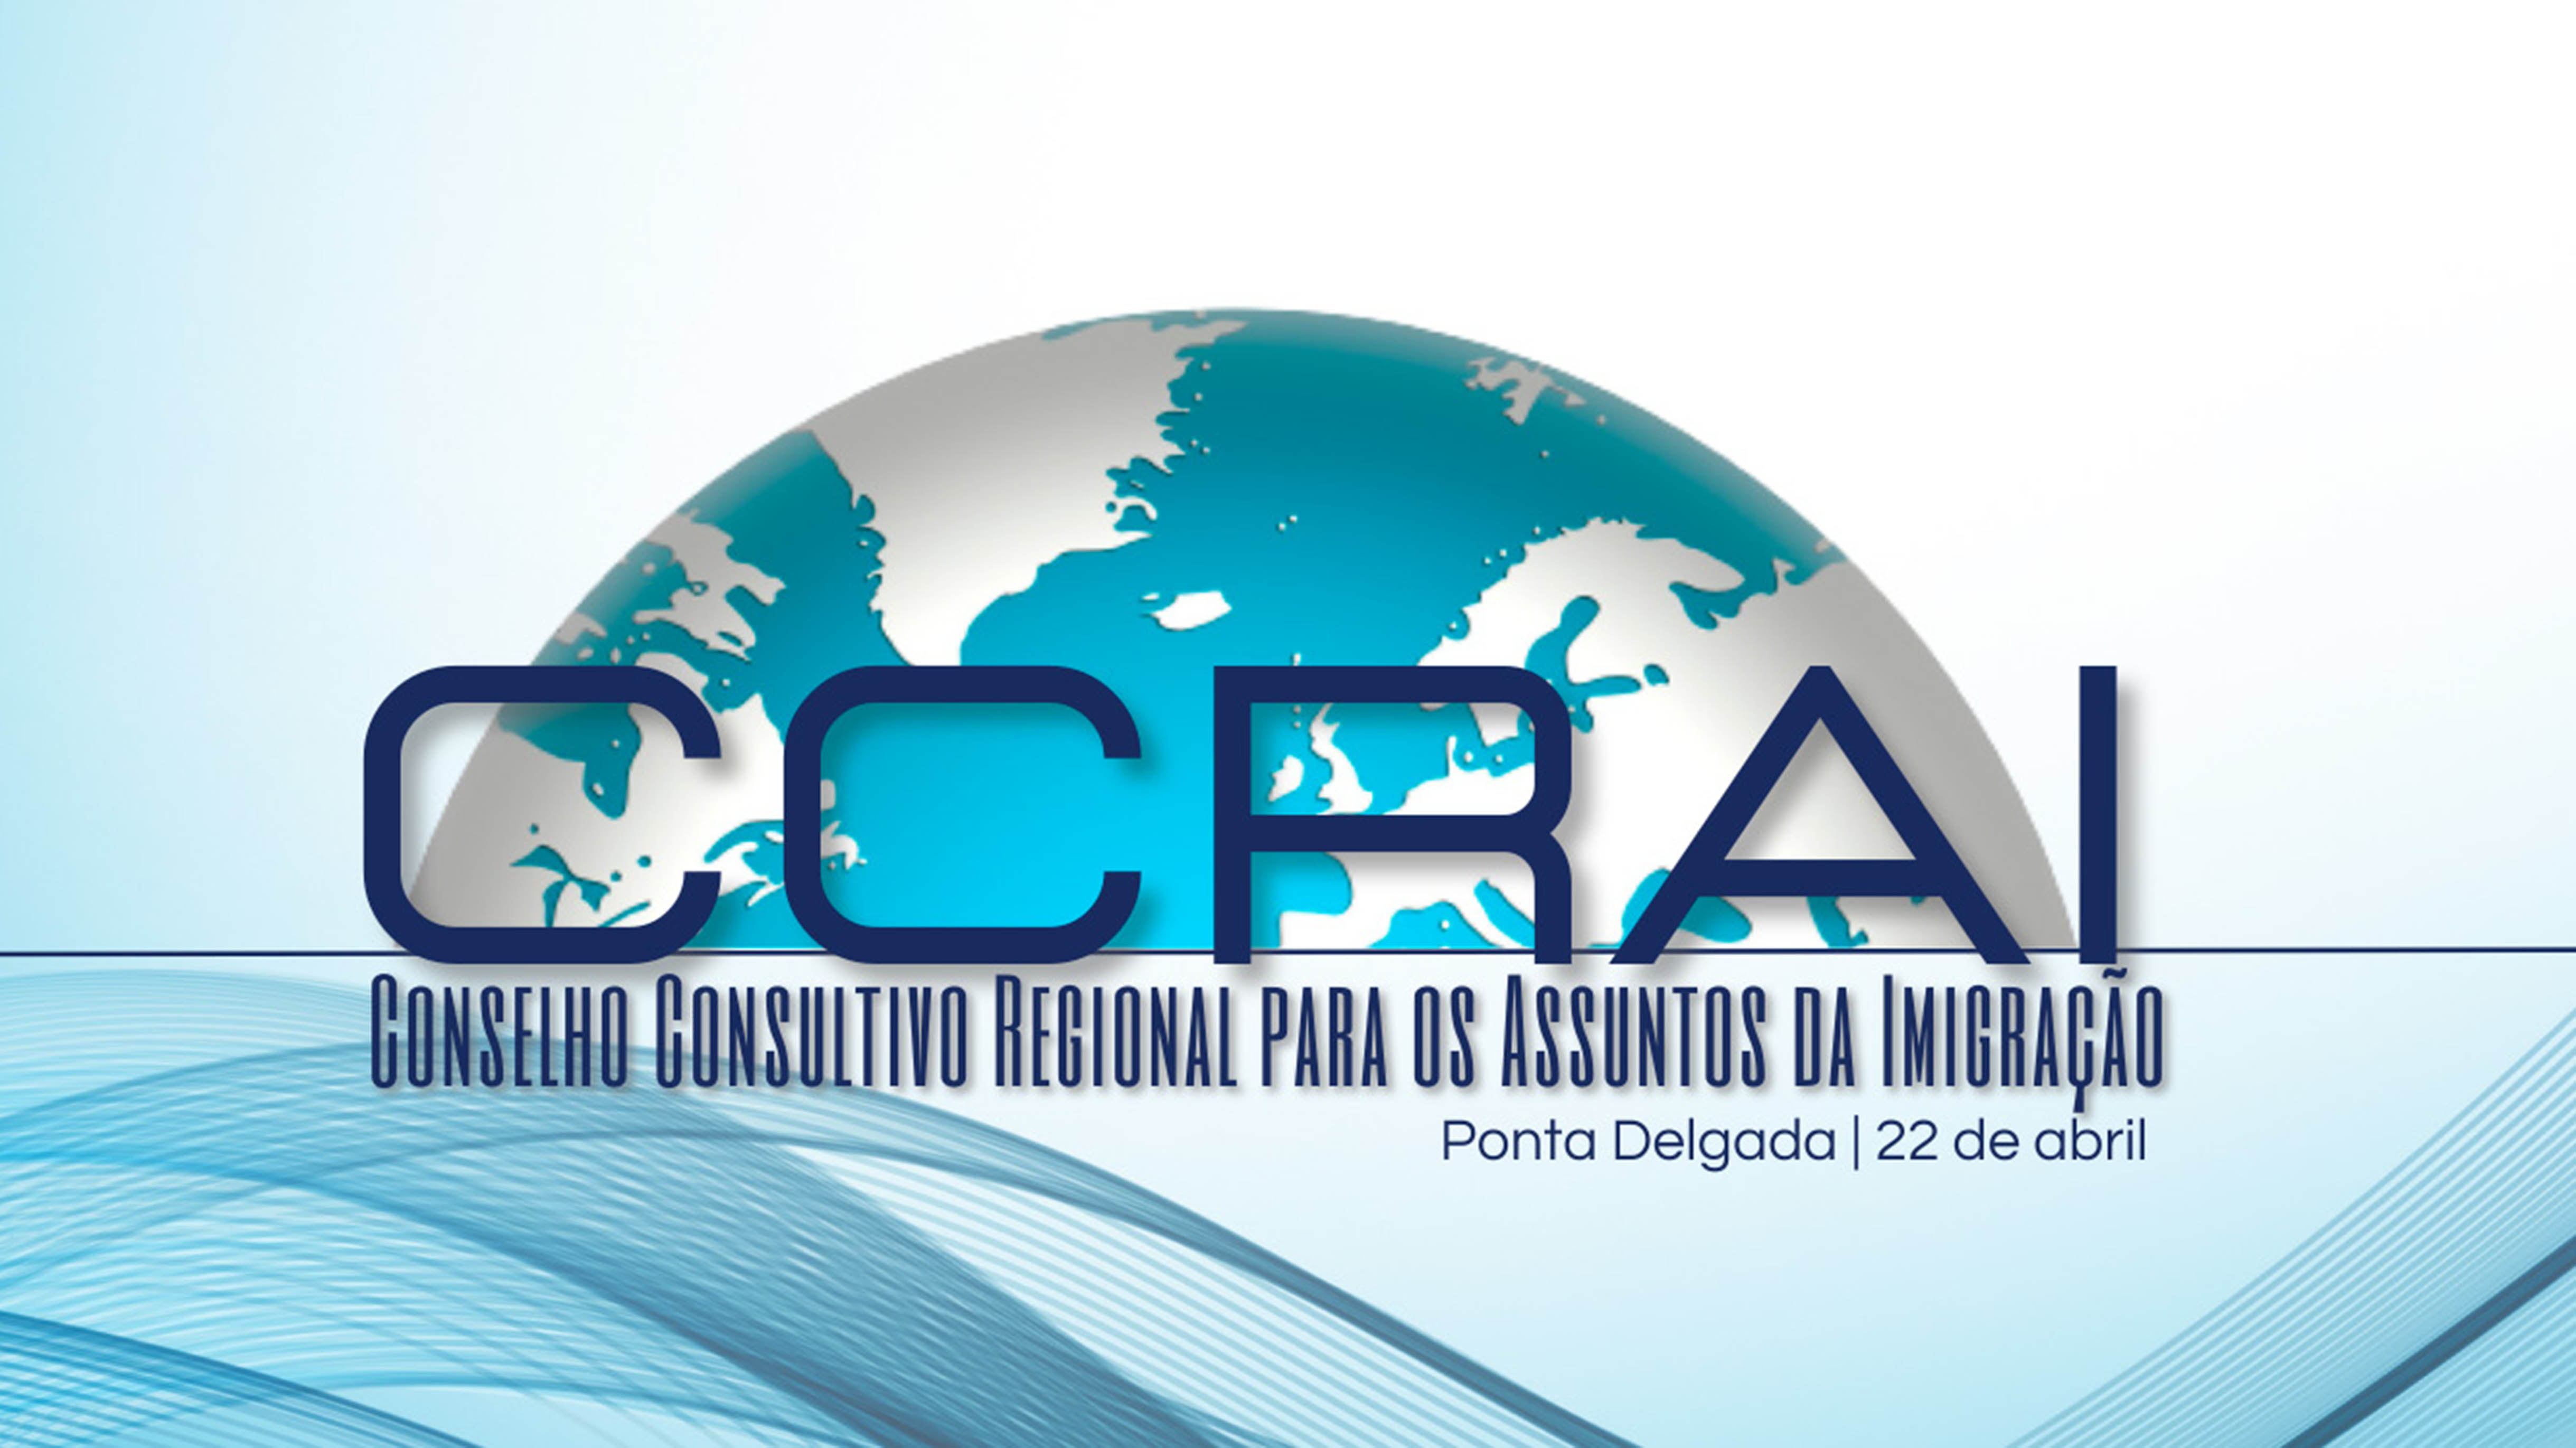 Conselho Consultivo Regional para os Assuntos da Imigração reúne-se na segunda-feira em Ponta Delgada